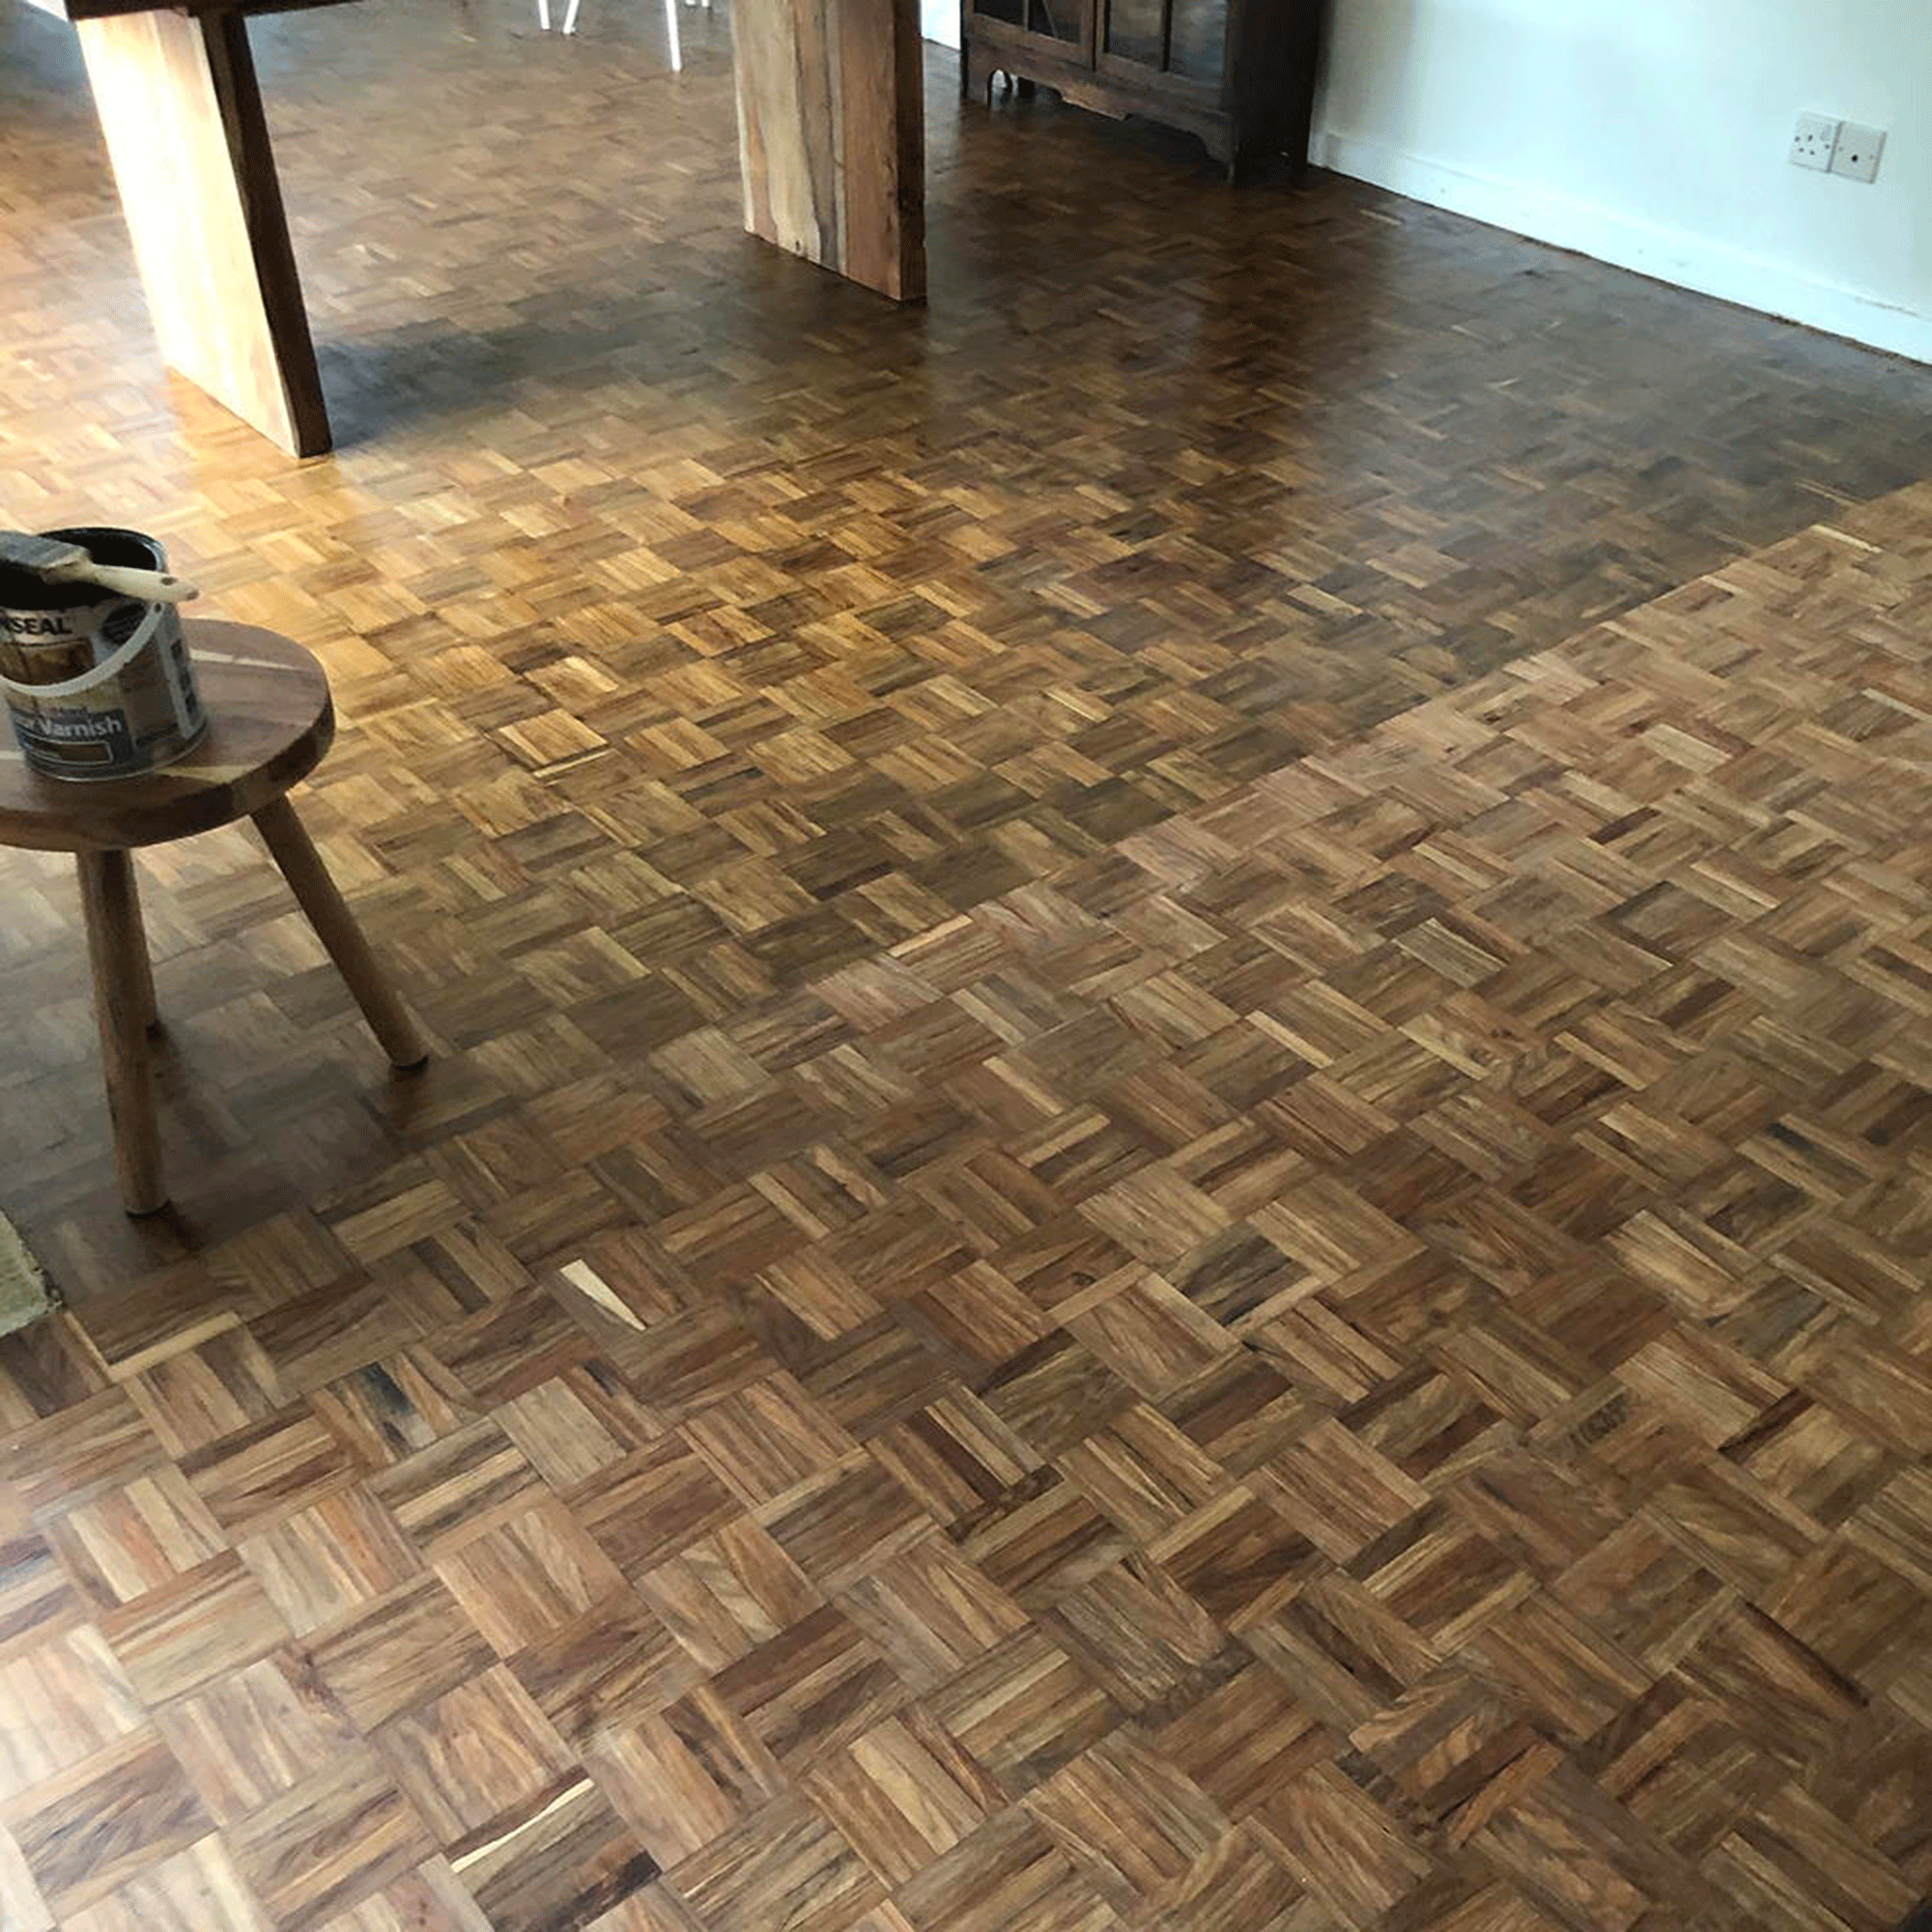 Wooden parquet flooring in living room